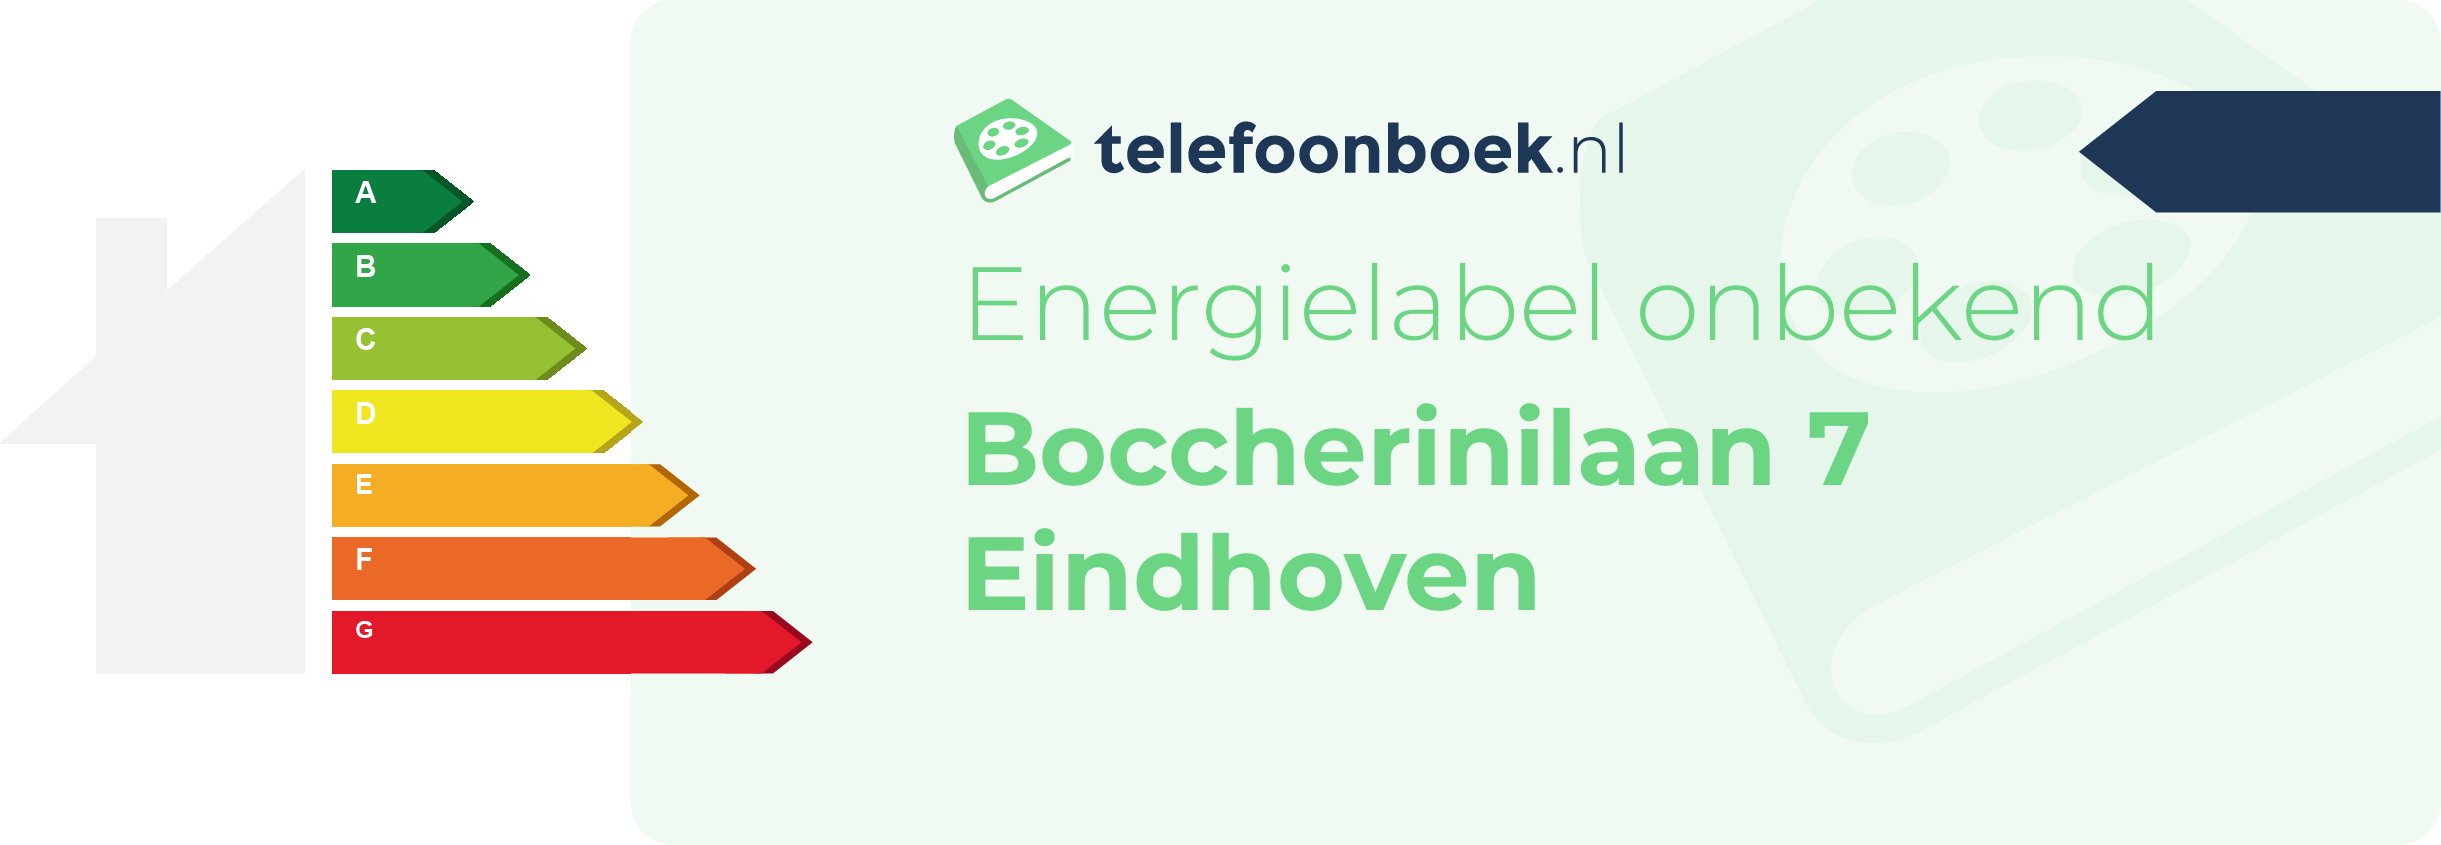 Energielabel Boccherinilaan 7 Eindhoven